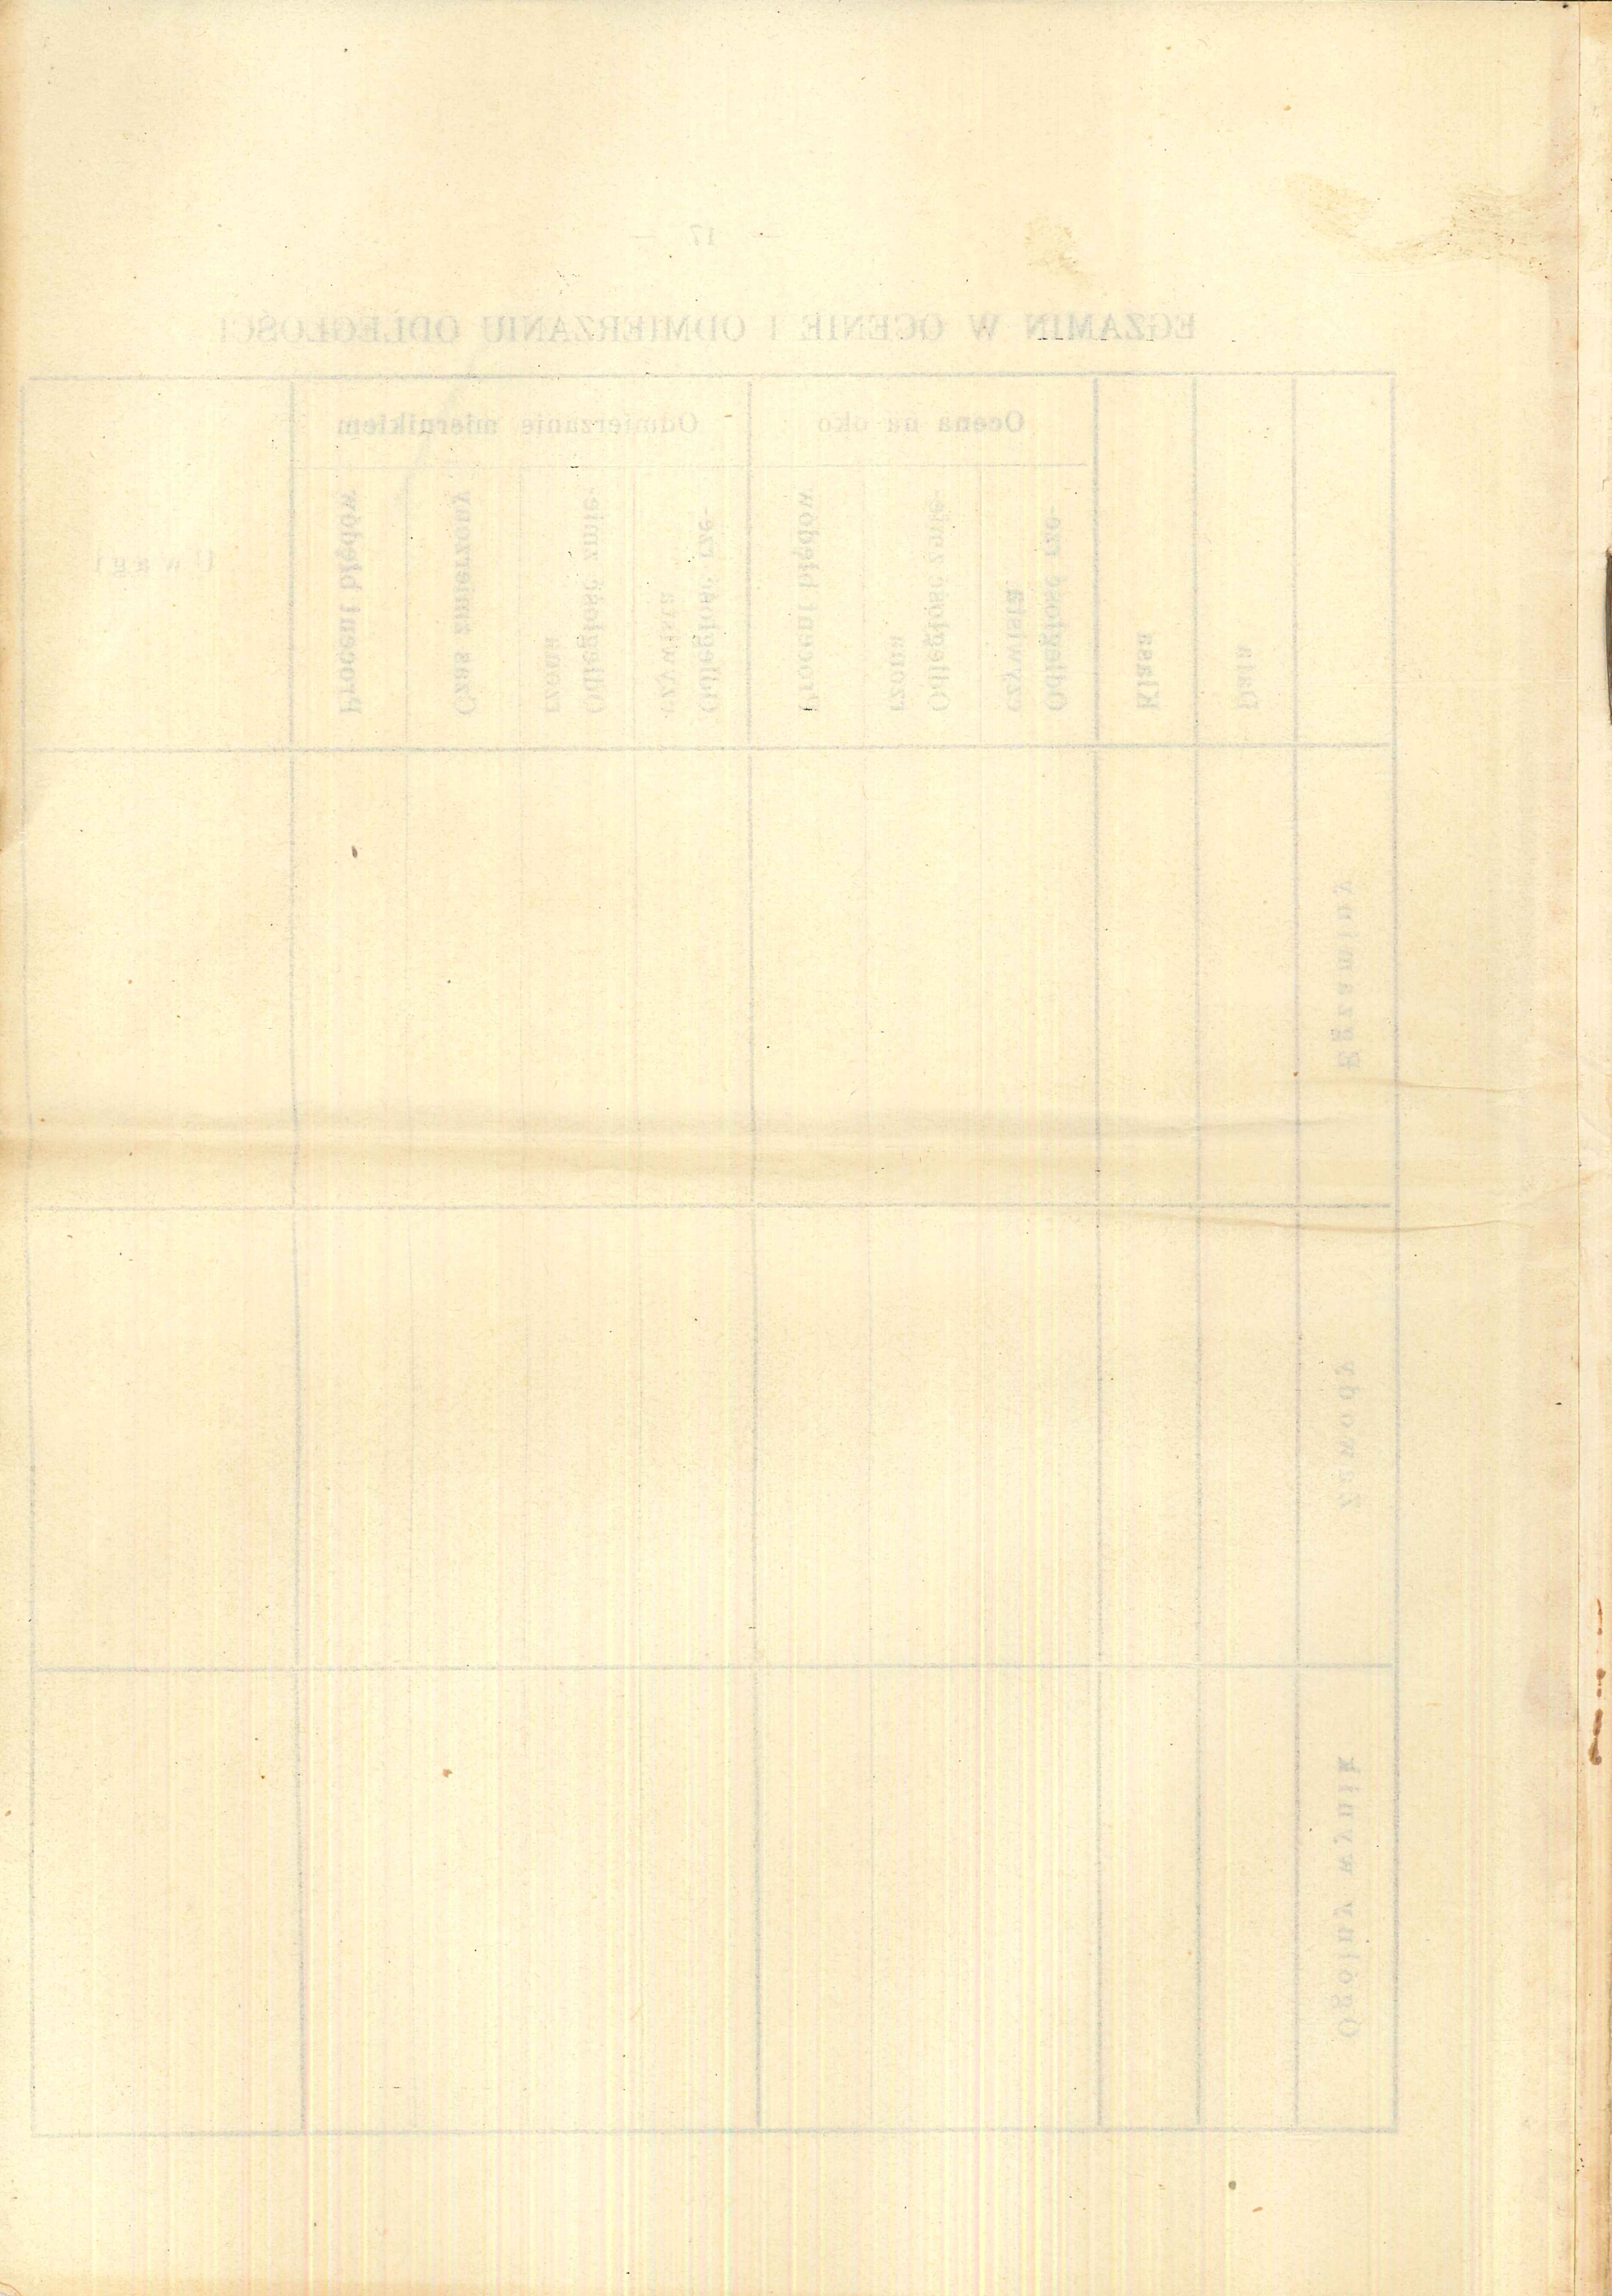 1930 Instrukcja strzelecka CKM - wzory dokumentów - 20151211053234900_0005.jpg